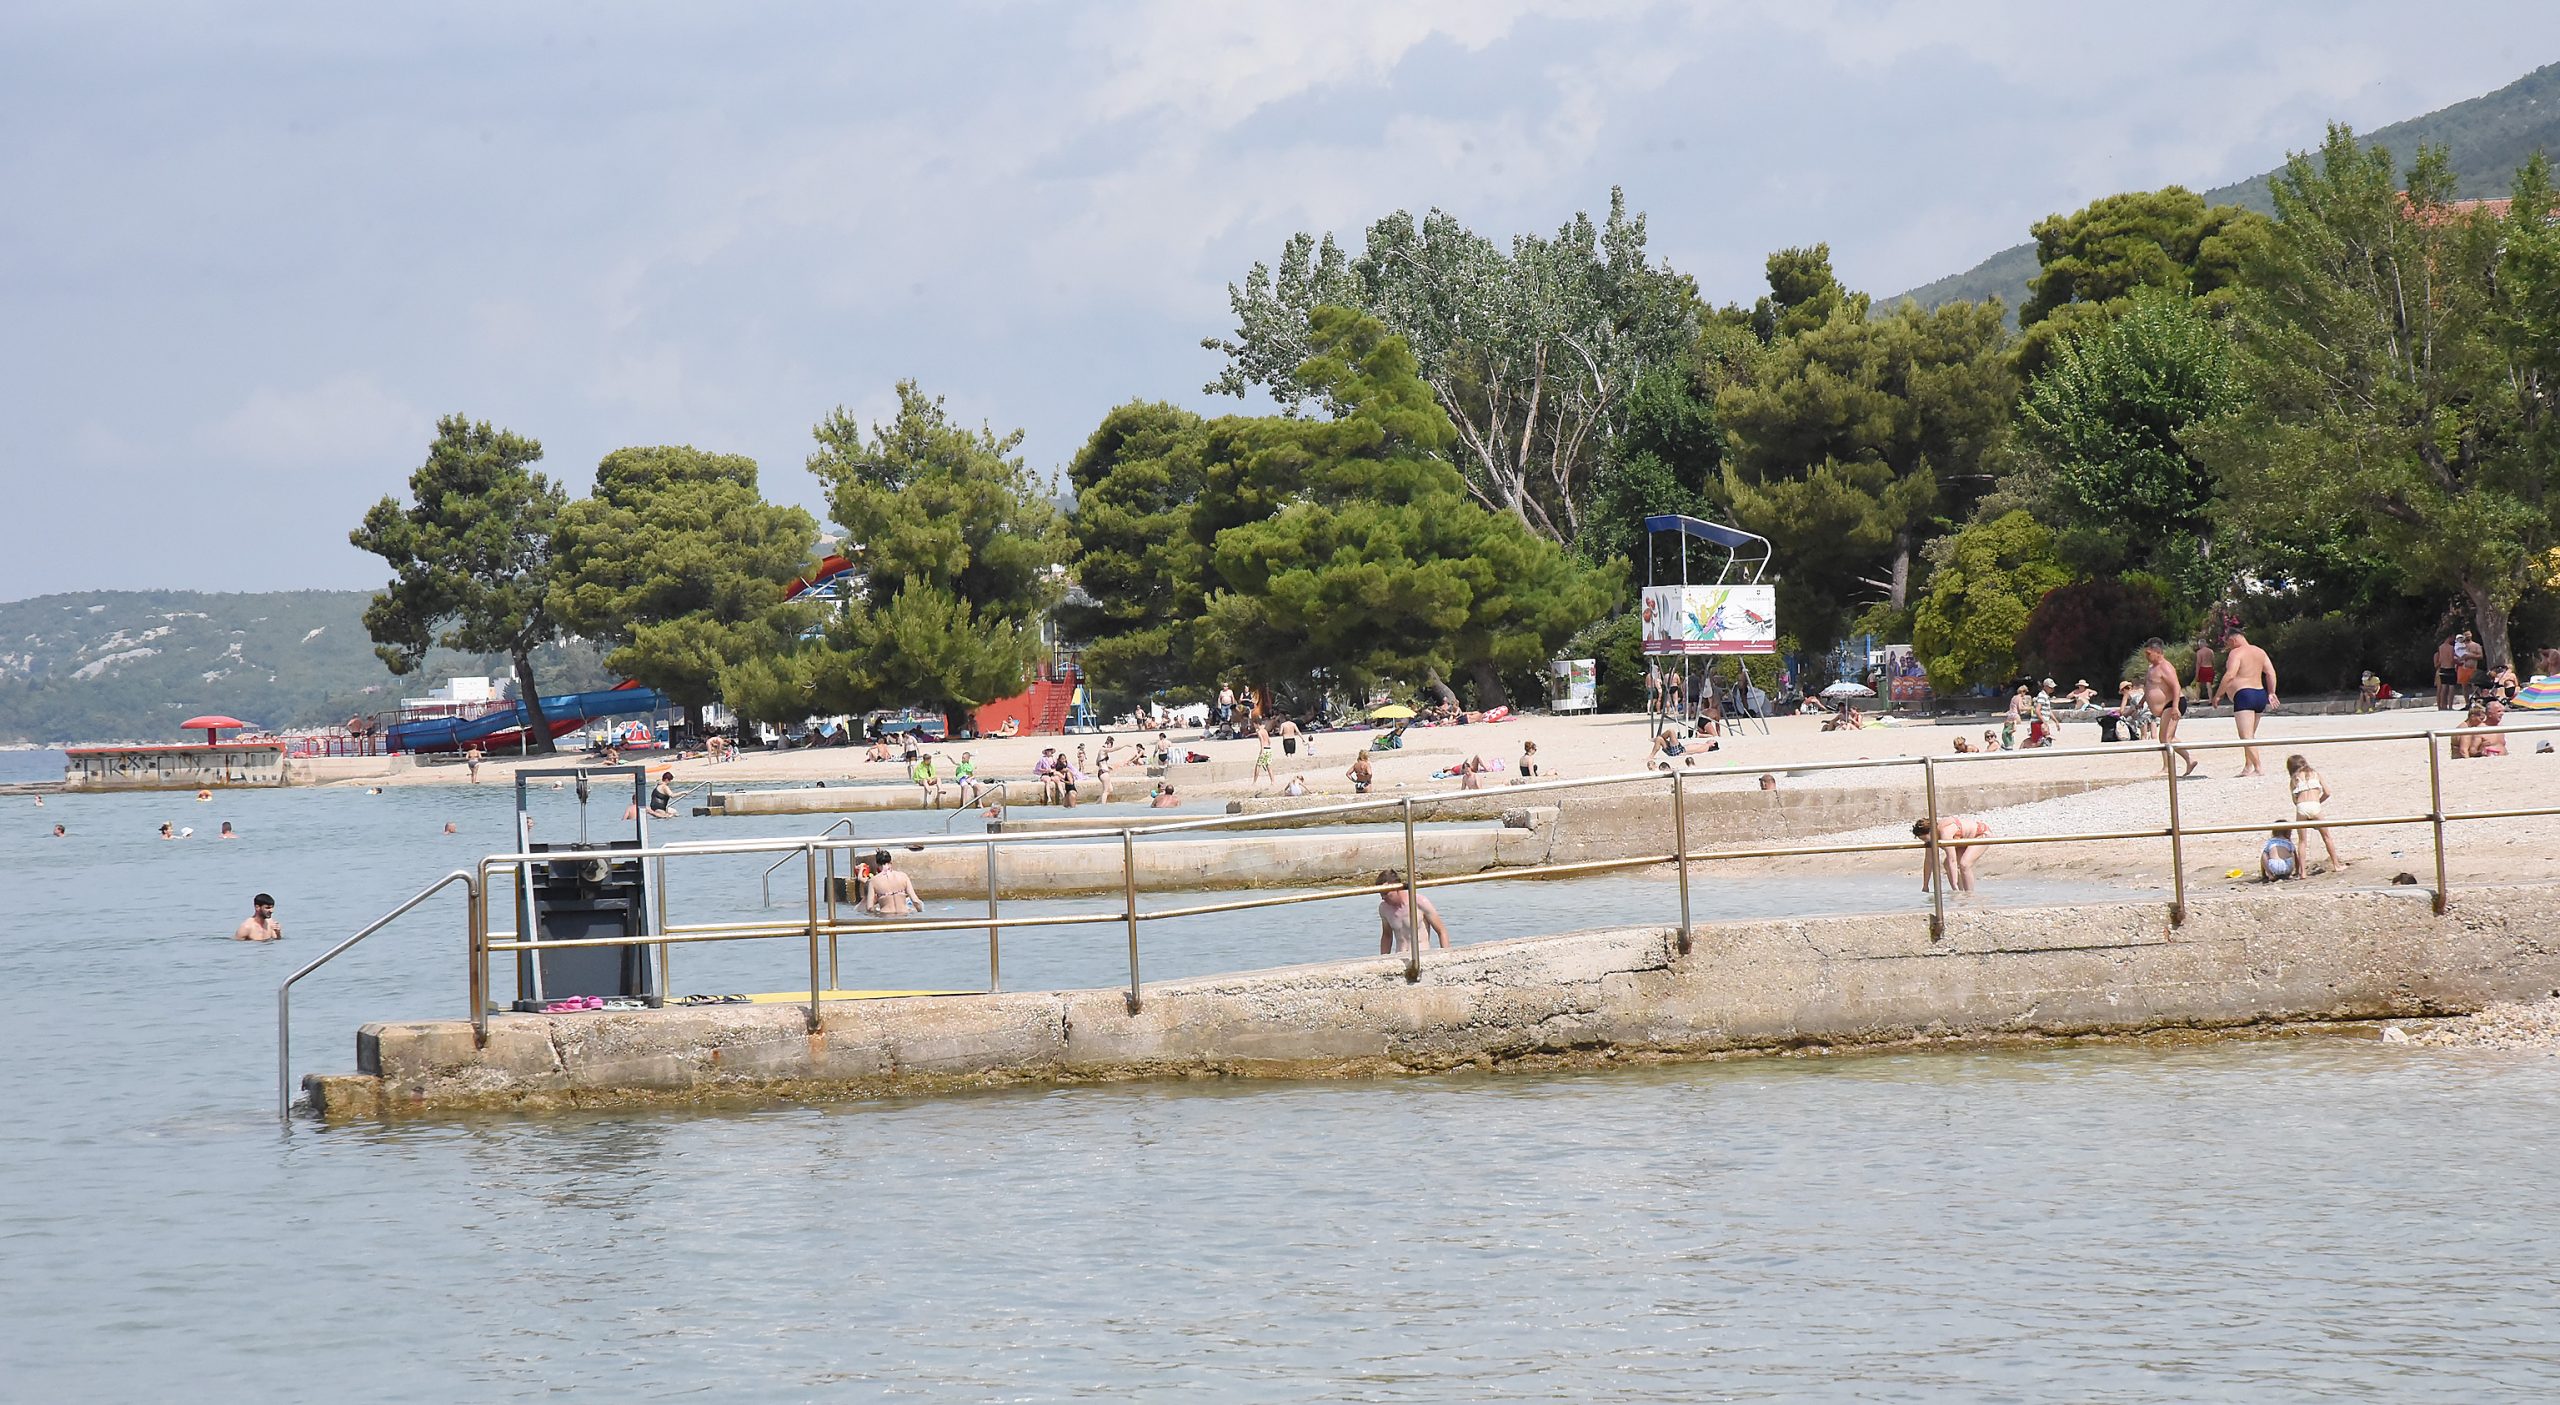 Zbog predugog čekanja na odluku o dodjeli koncesije, Grad Crikvenica je plažu krenuo uređivati tek u lipnju / Foto S. DRECHSLER